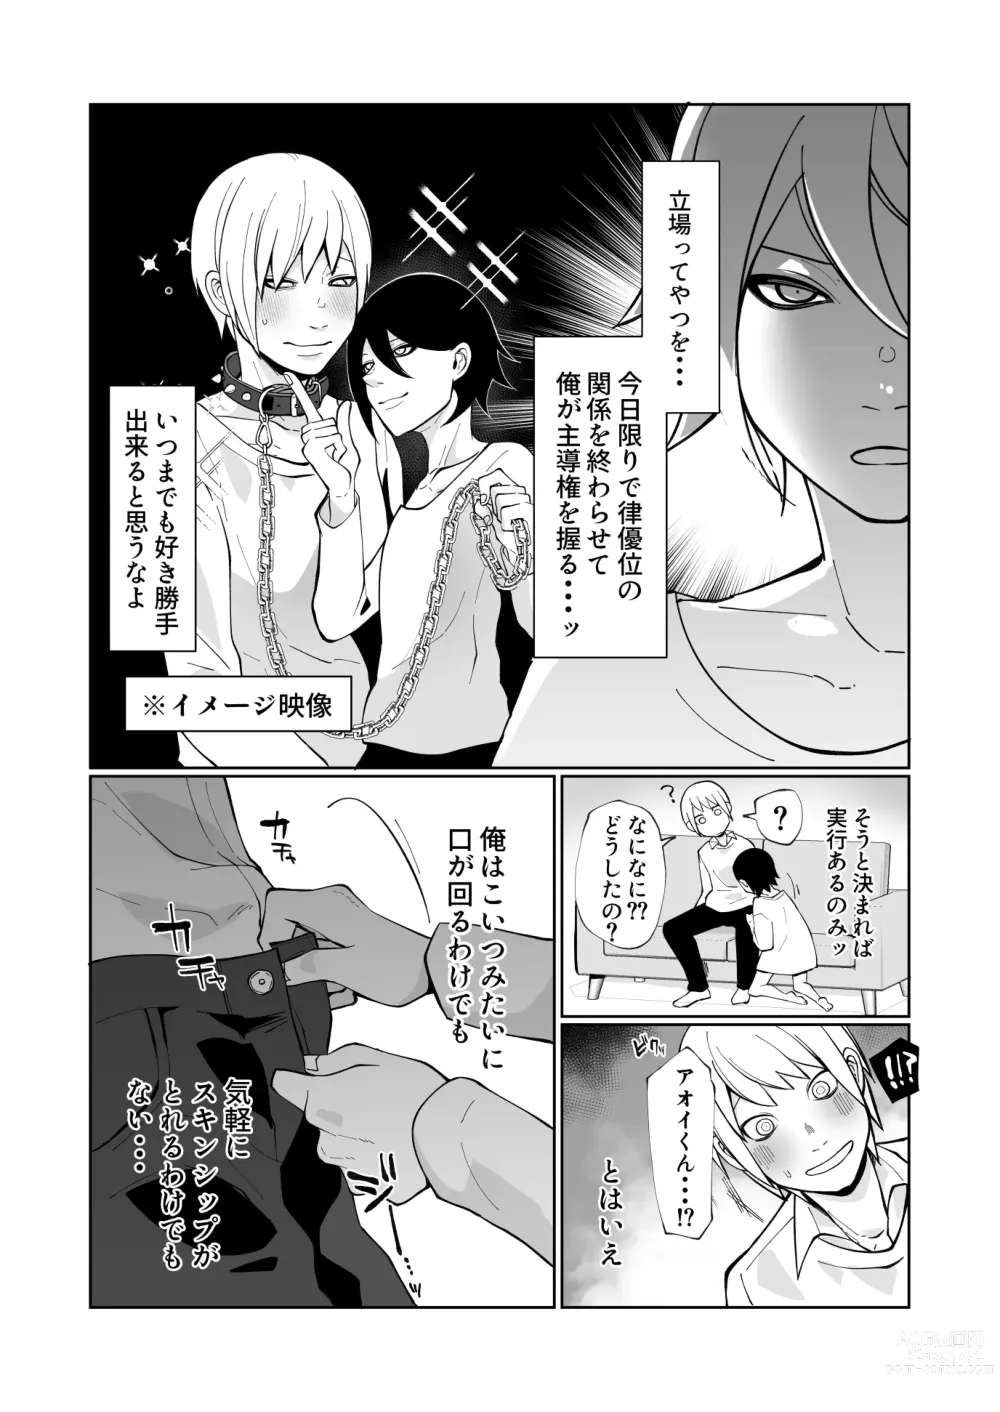 Page 7 of doujinshi Wakaraseru Hazu datta noni Kekkyoku Wakaraserarete Renzoku Shiofuki Zecchou Saserareta